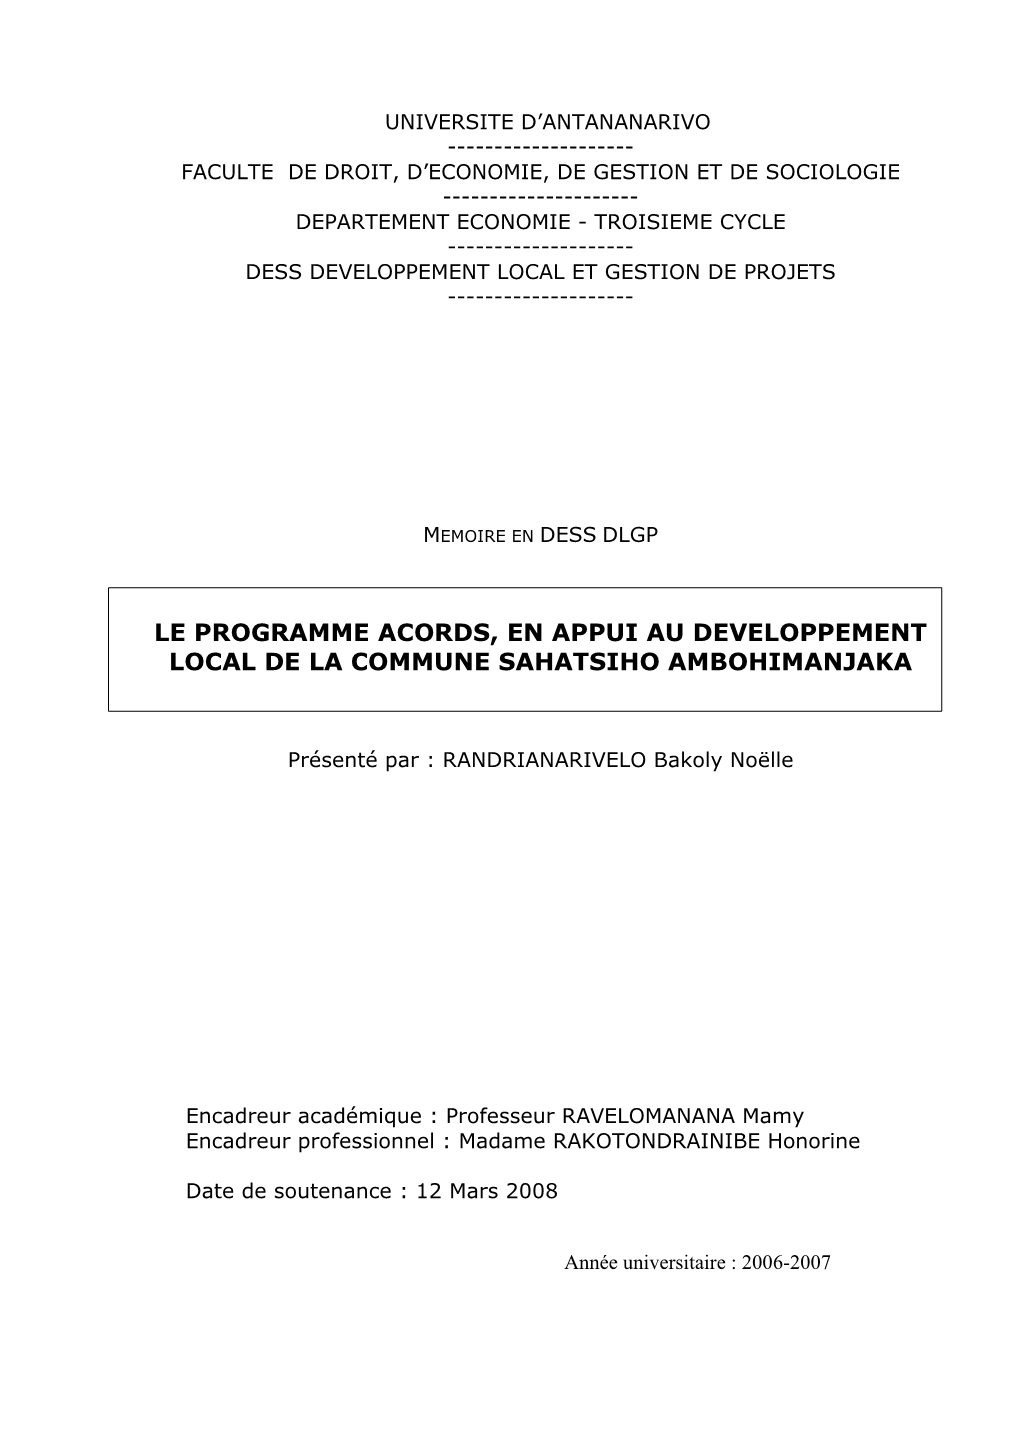 Le Programme Acords, En Appui Au Developpement Local De La Commune Sahatsiho Ambohimanjaka